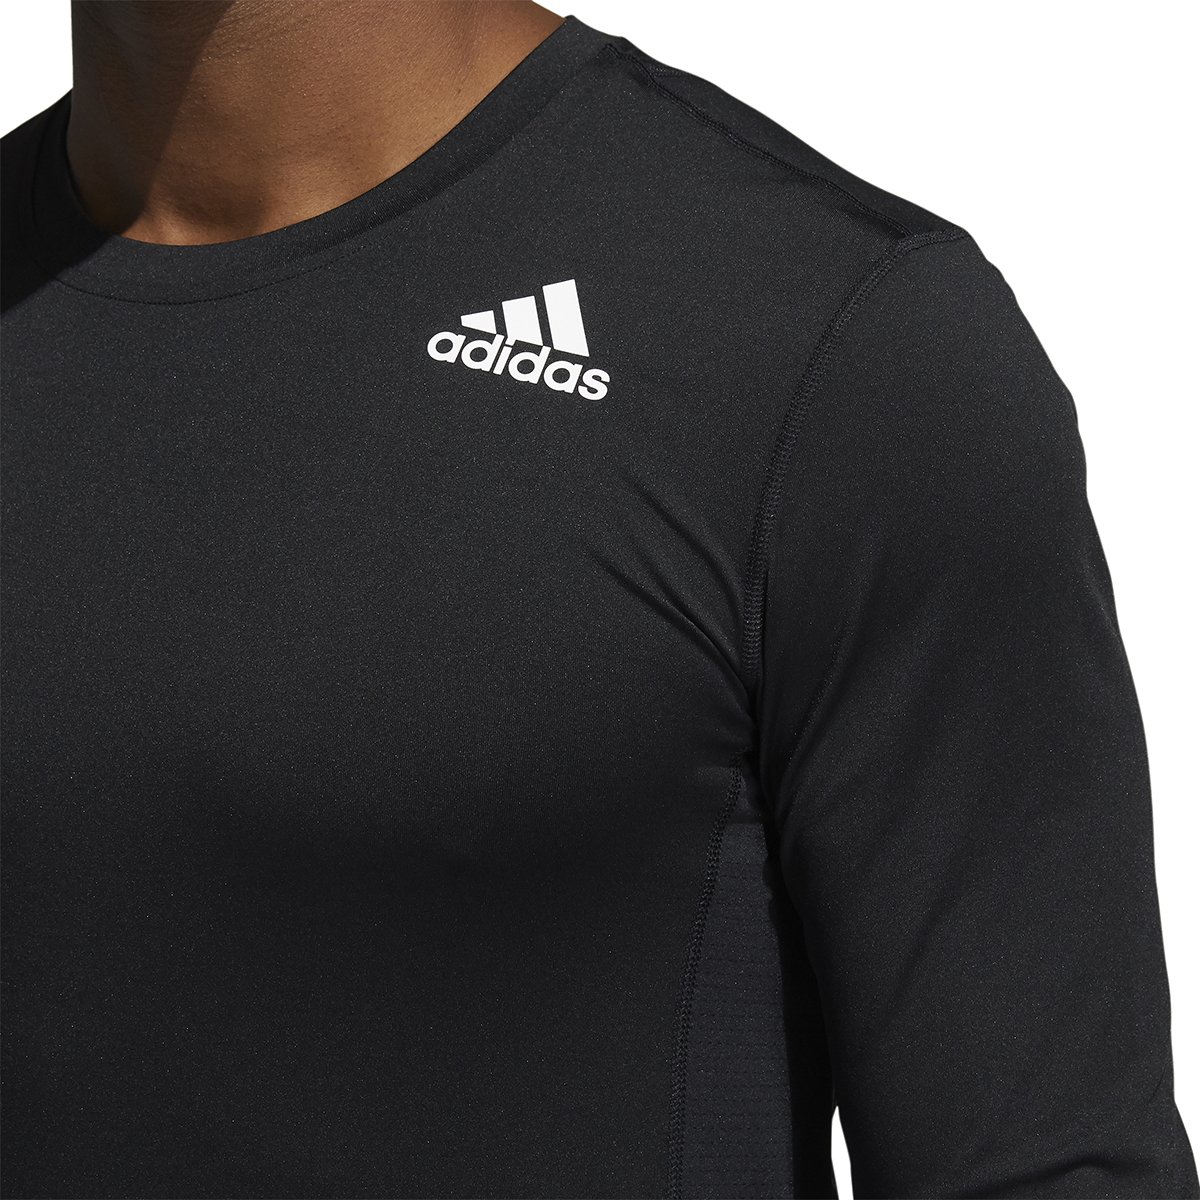 Camiseta Adidas Techfit Compression Masculina GM5038 - Ativa Esportes